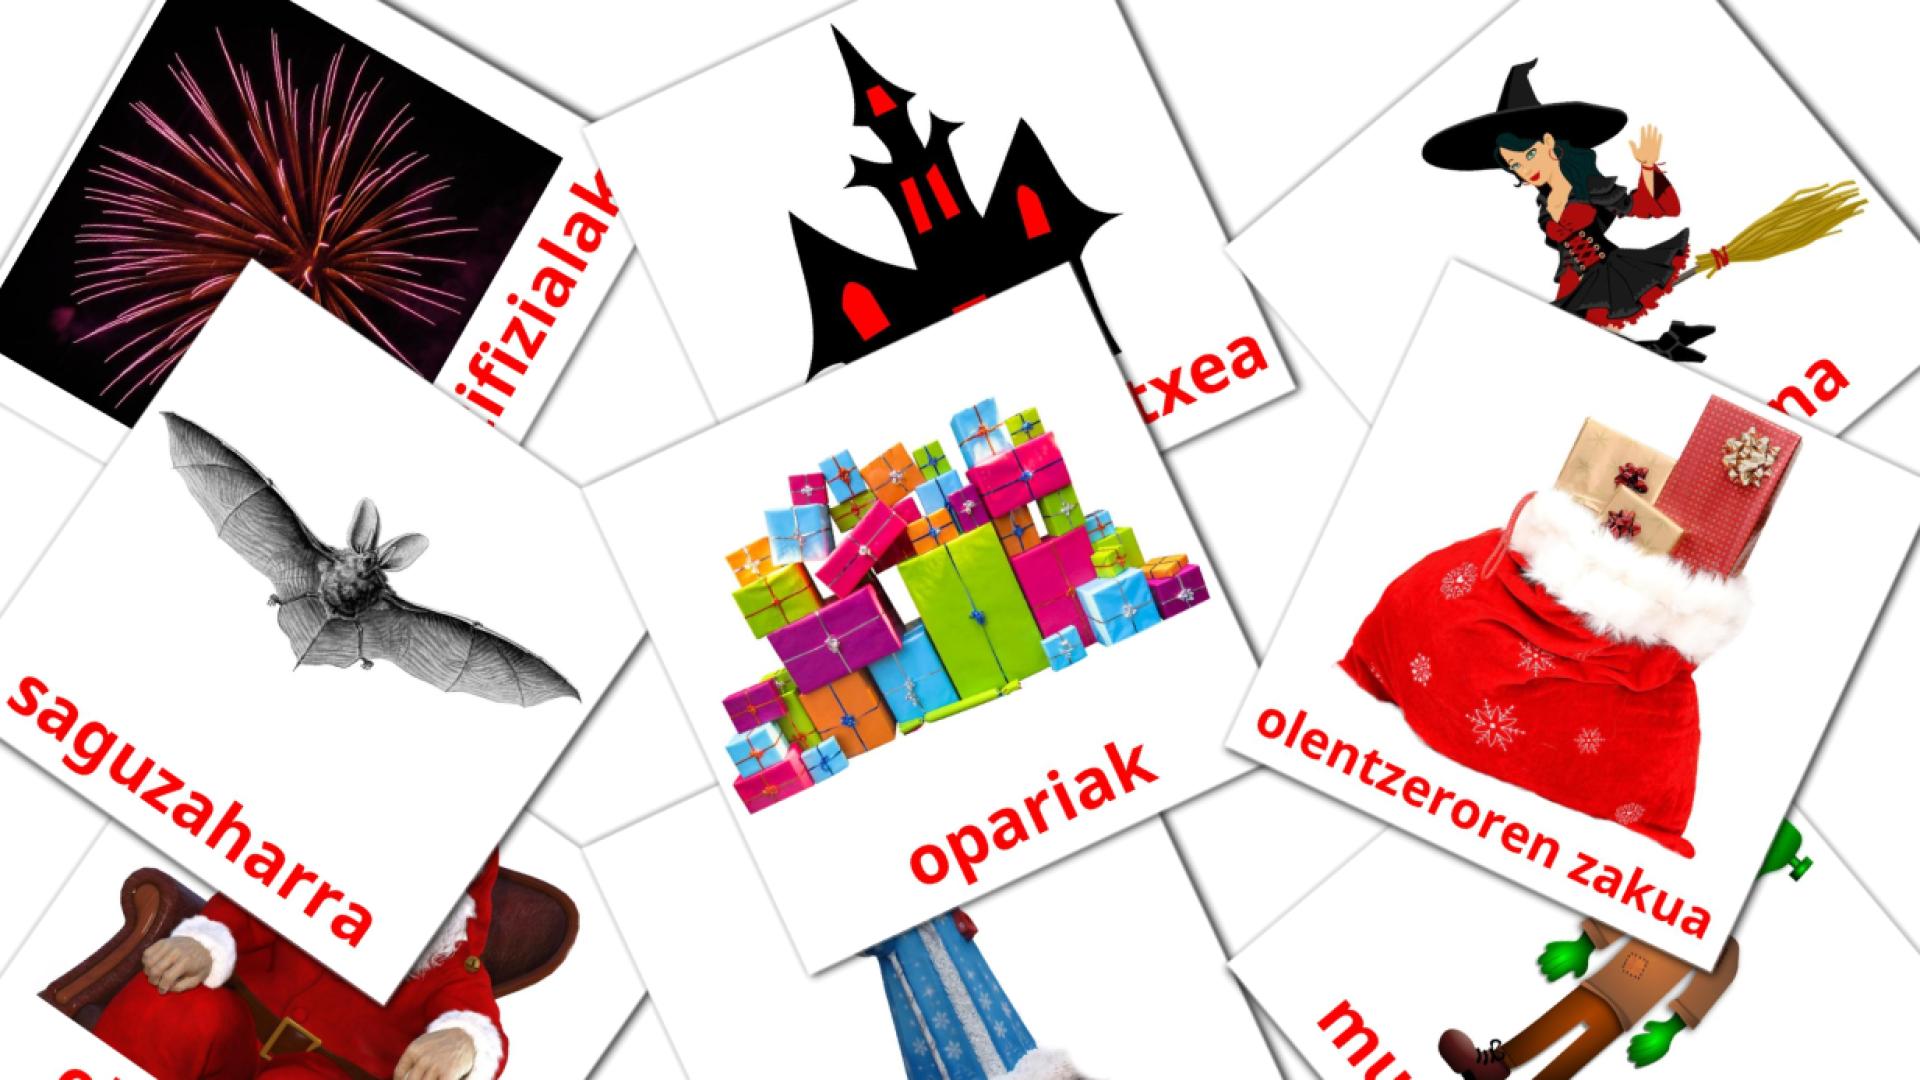 Oporrak basque vocabulary flashcards